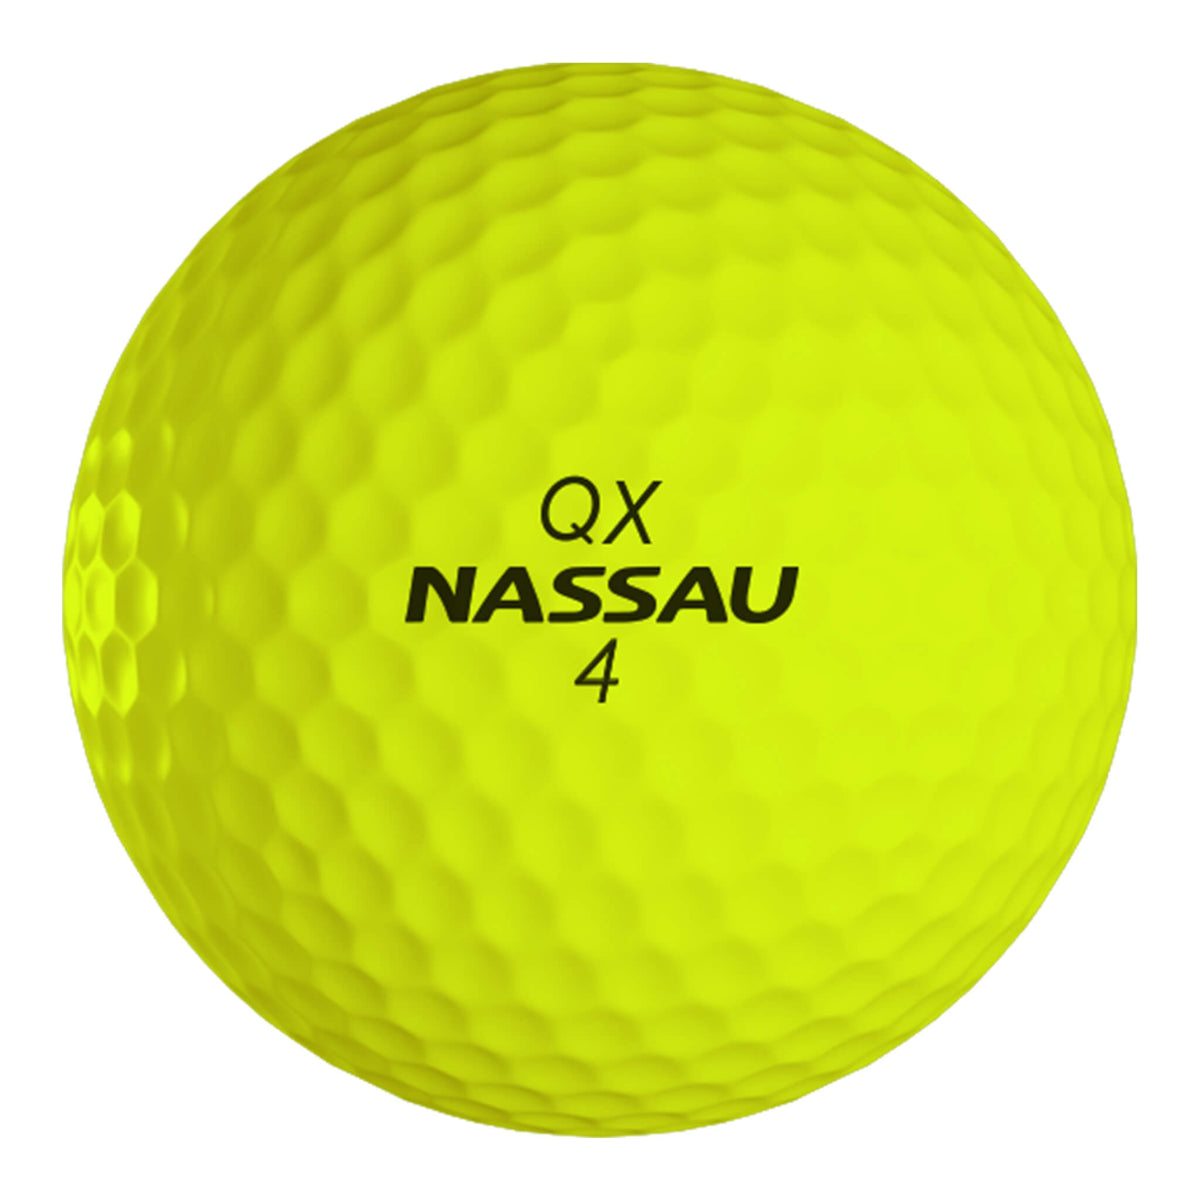 Nassau QX Yellow